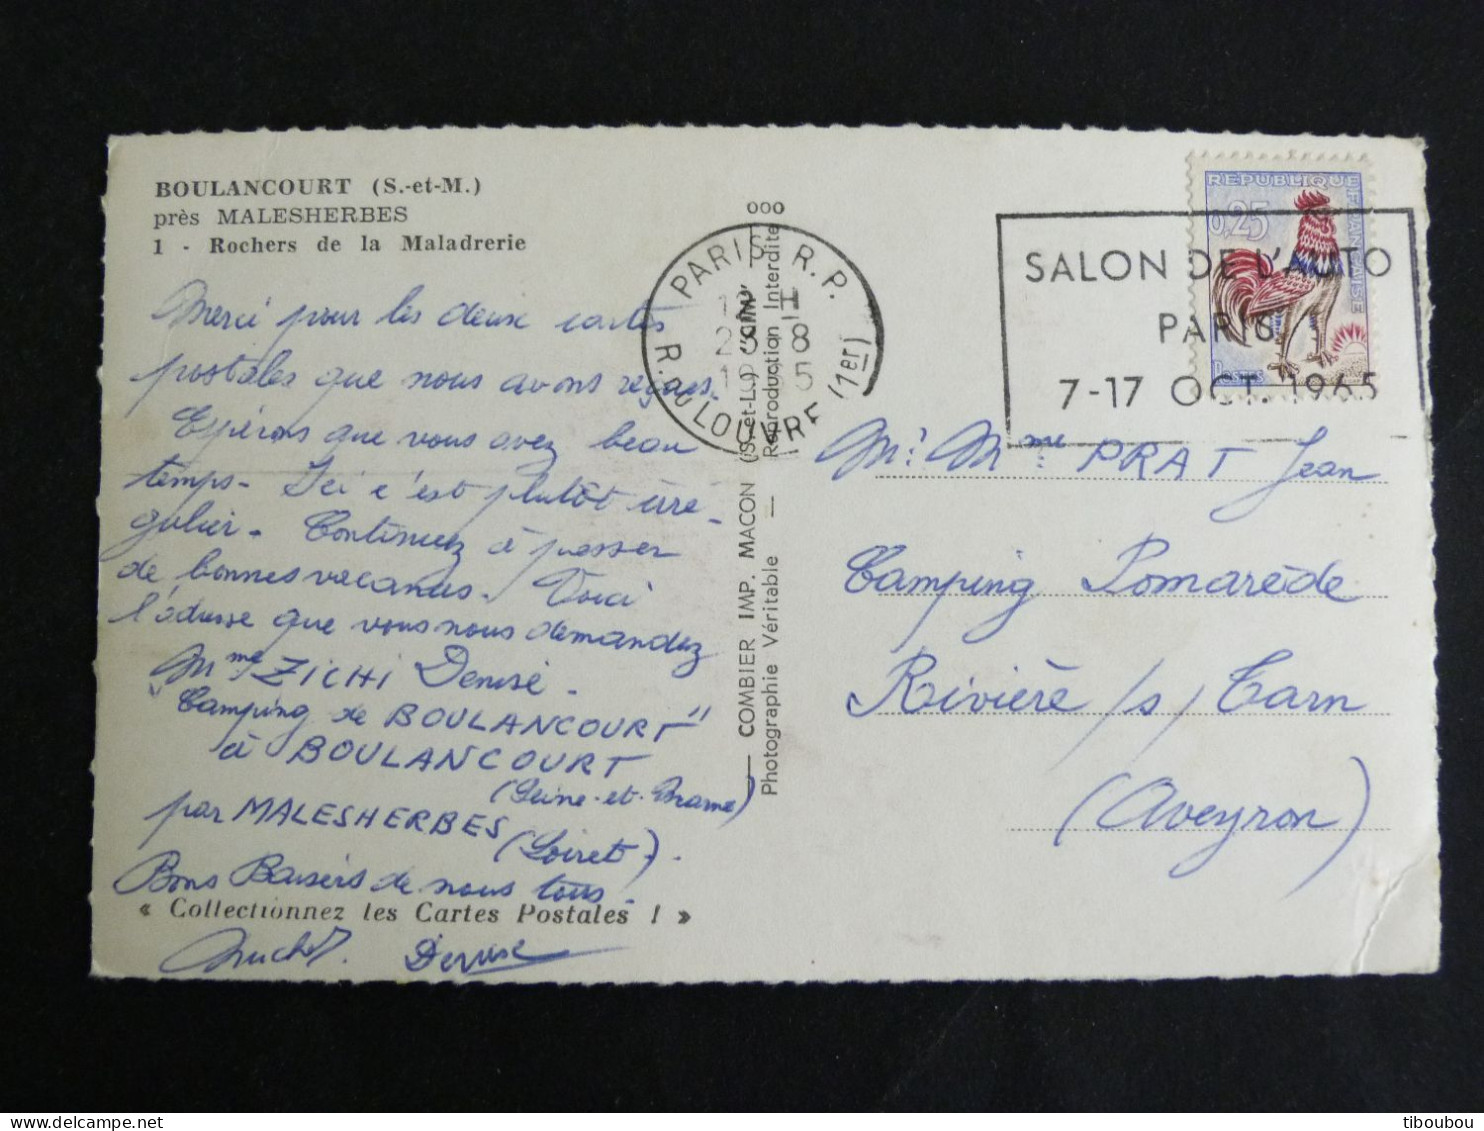 PARIS RP RUE DU LOUVRE 1er - FLAMME SALON AUTO 1965 SUR COQ DECARIS - BOULANCOURT SEINE ET MARNE ROCHERS MALADRERIE - Mechanical Postmarks (Advertisement)